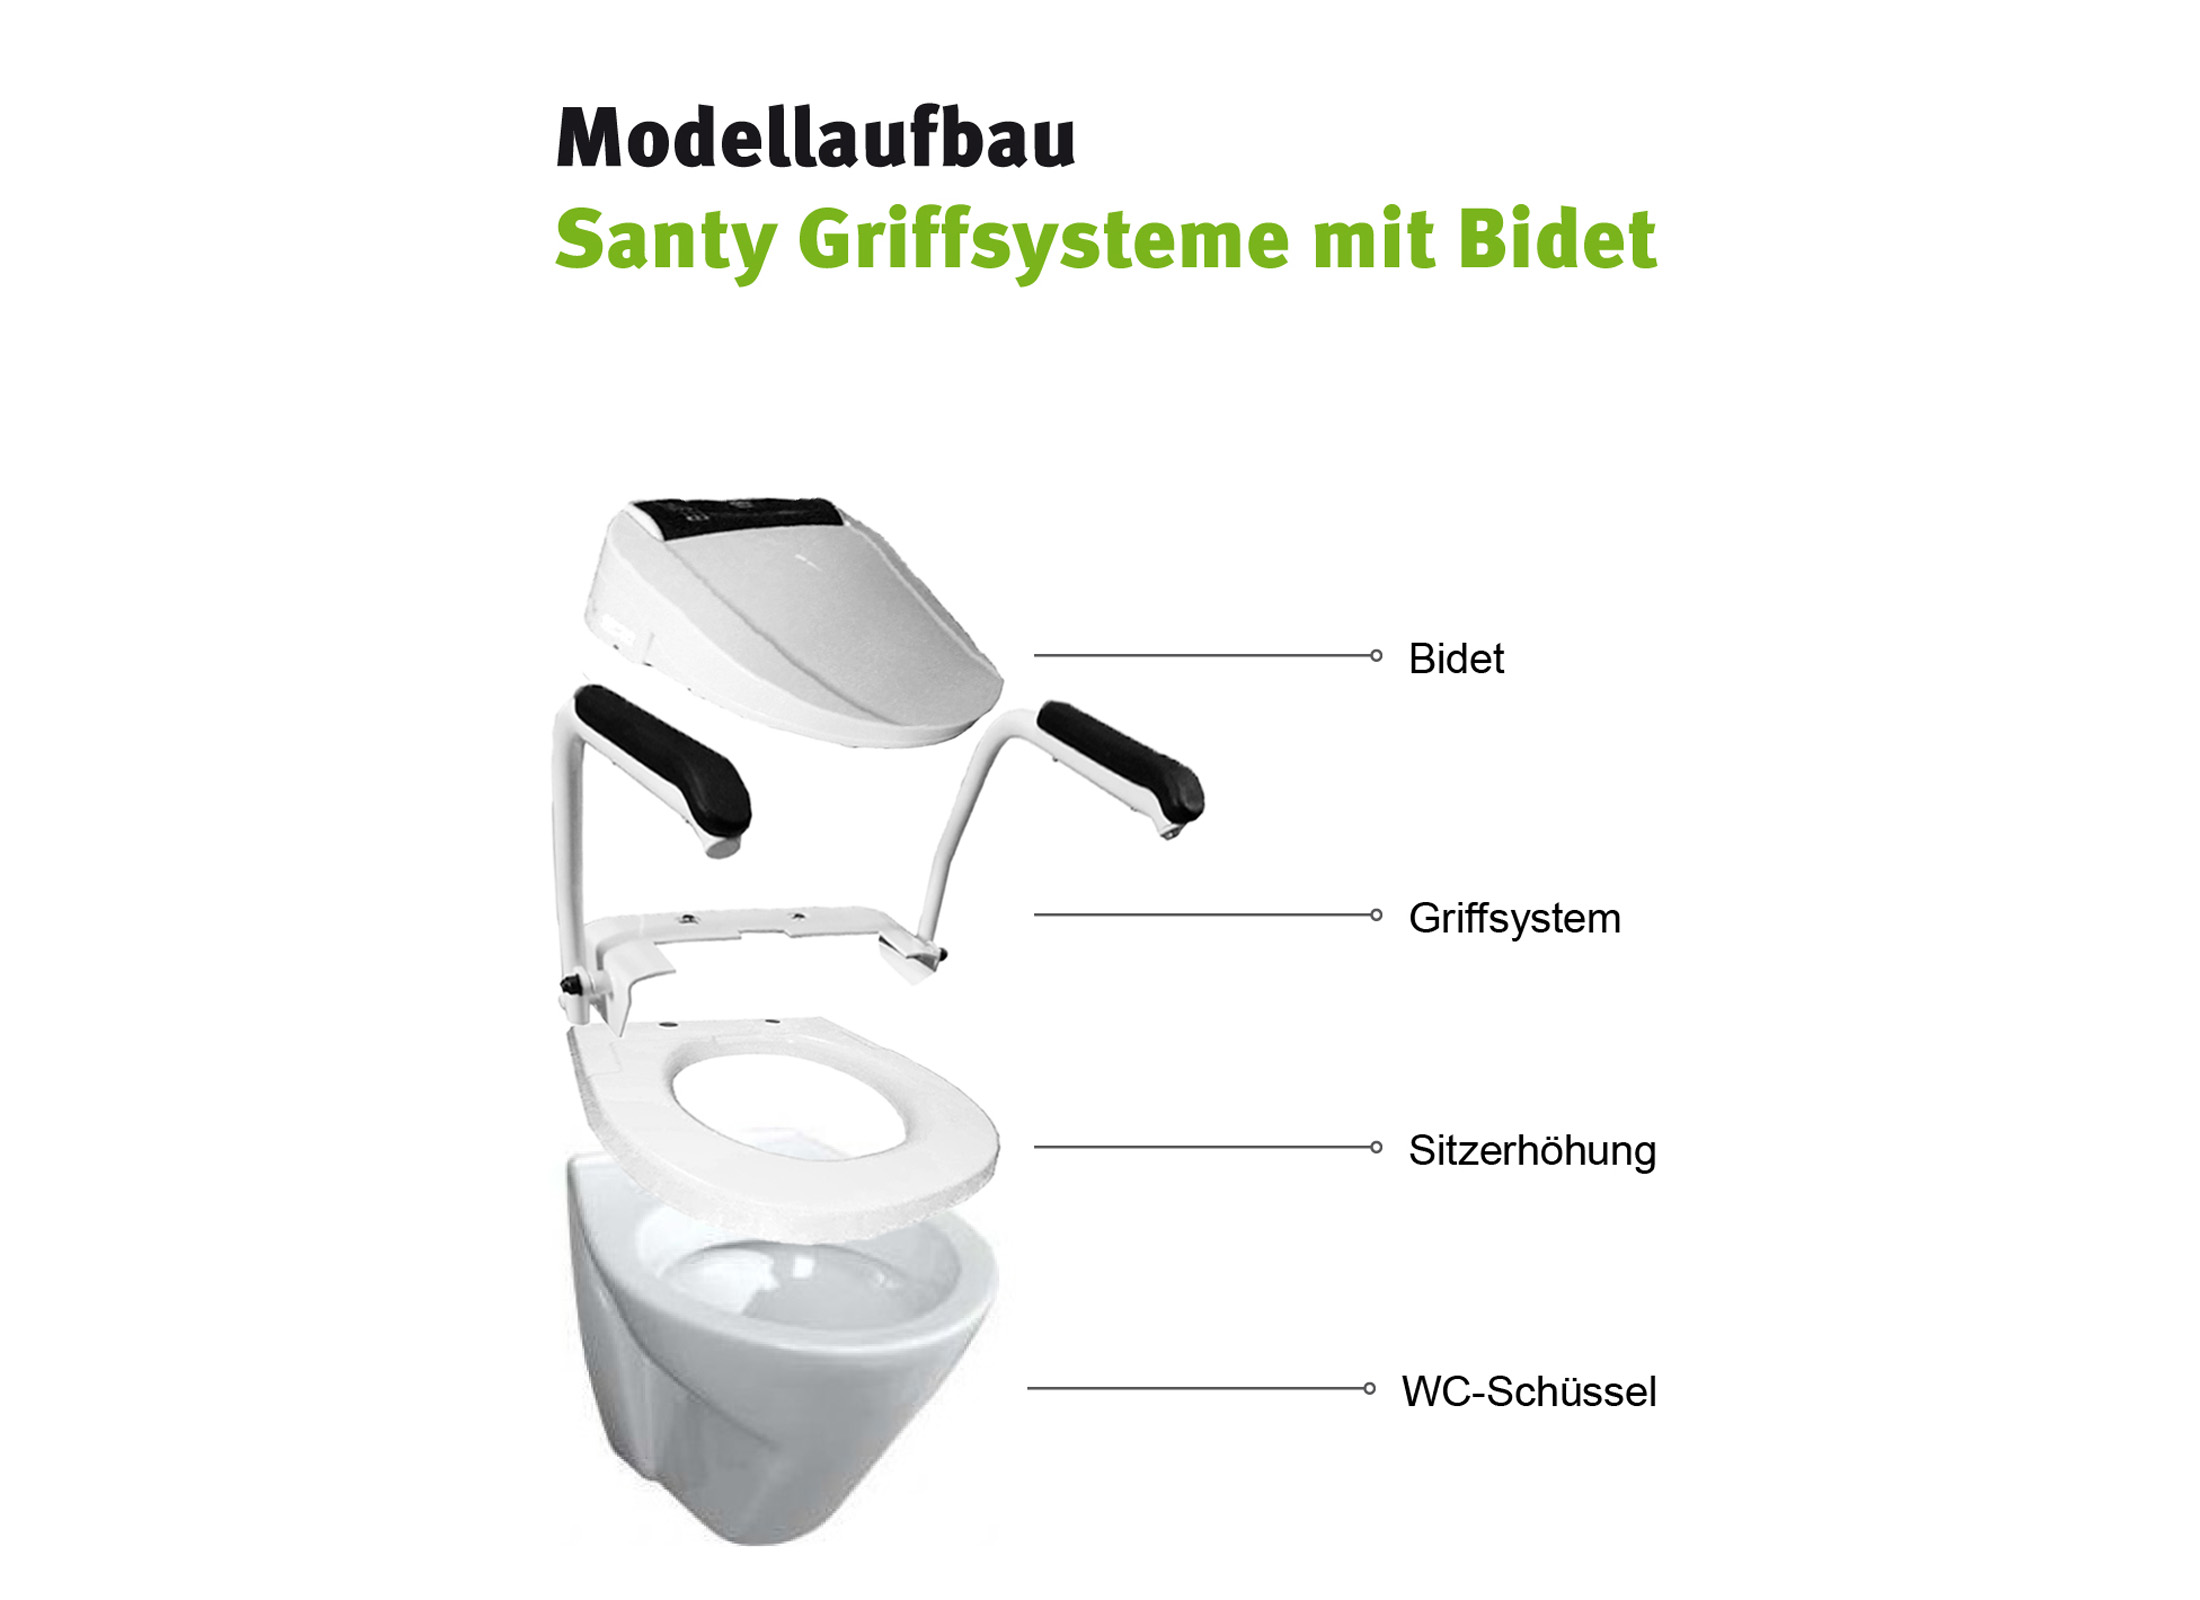 Santy Griffsysteme Modellaufbau für Bidet - sowohl für Stand- als auch Wand-WCs geeignet